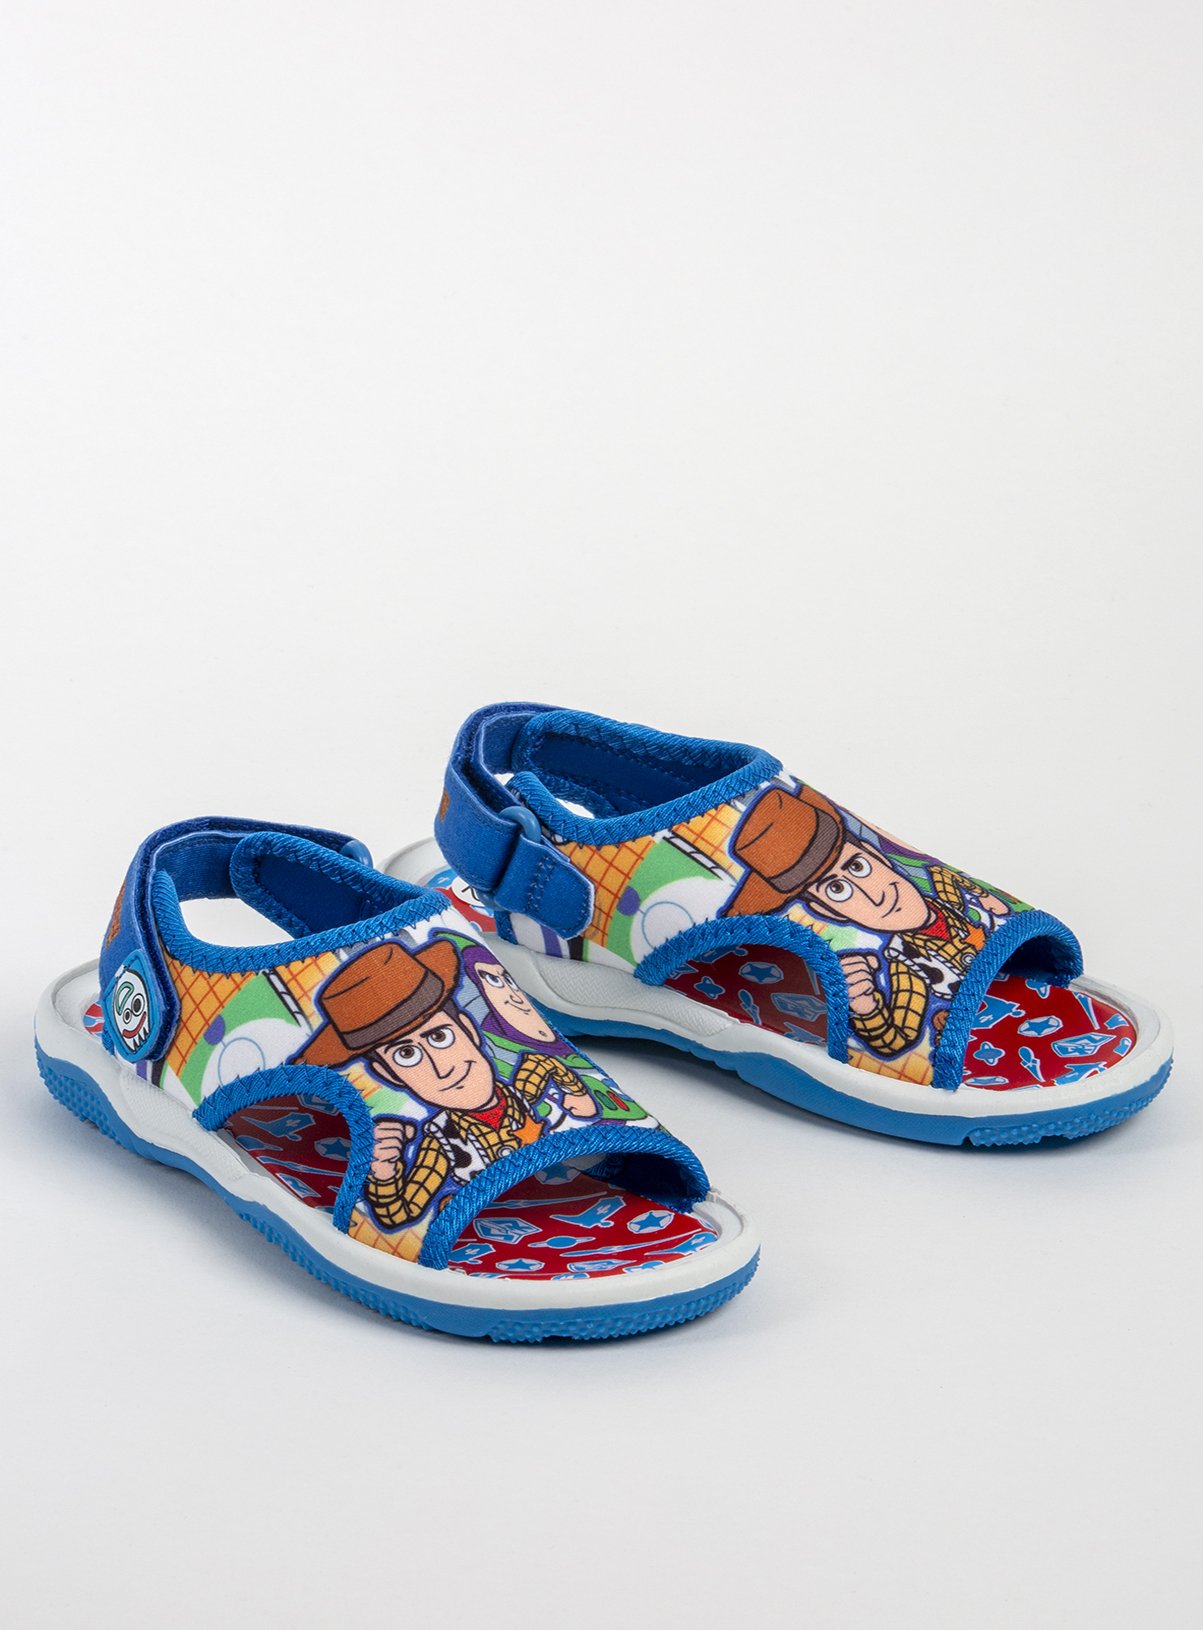 blue infant shoes